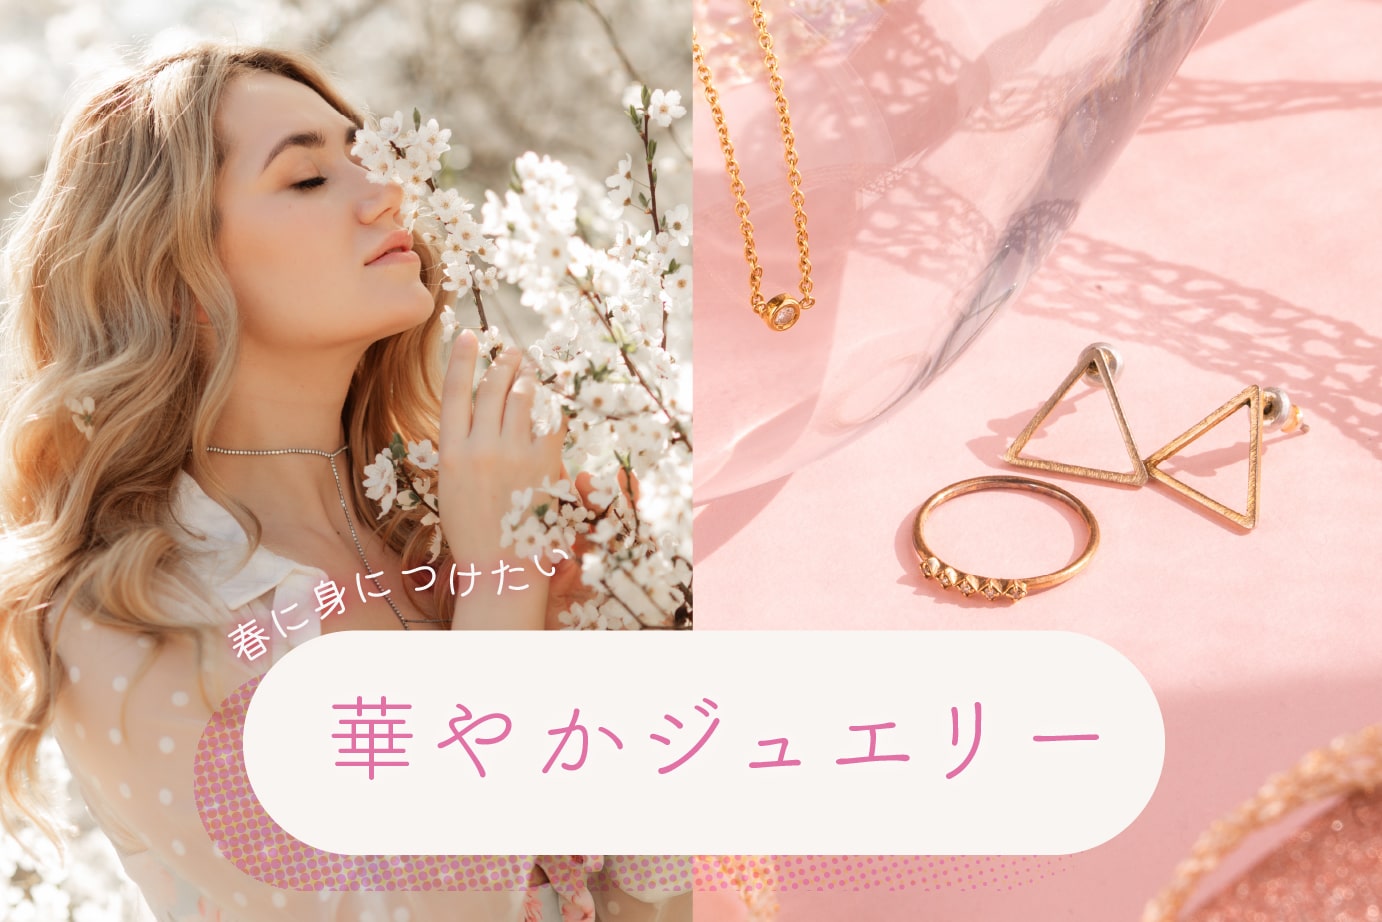 桜の花に顔を寄せる女性と指輪とピアスの写真